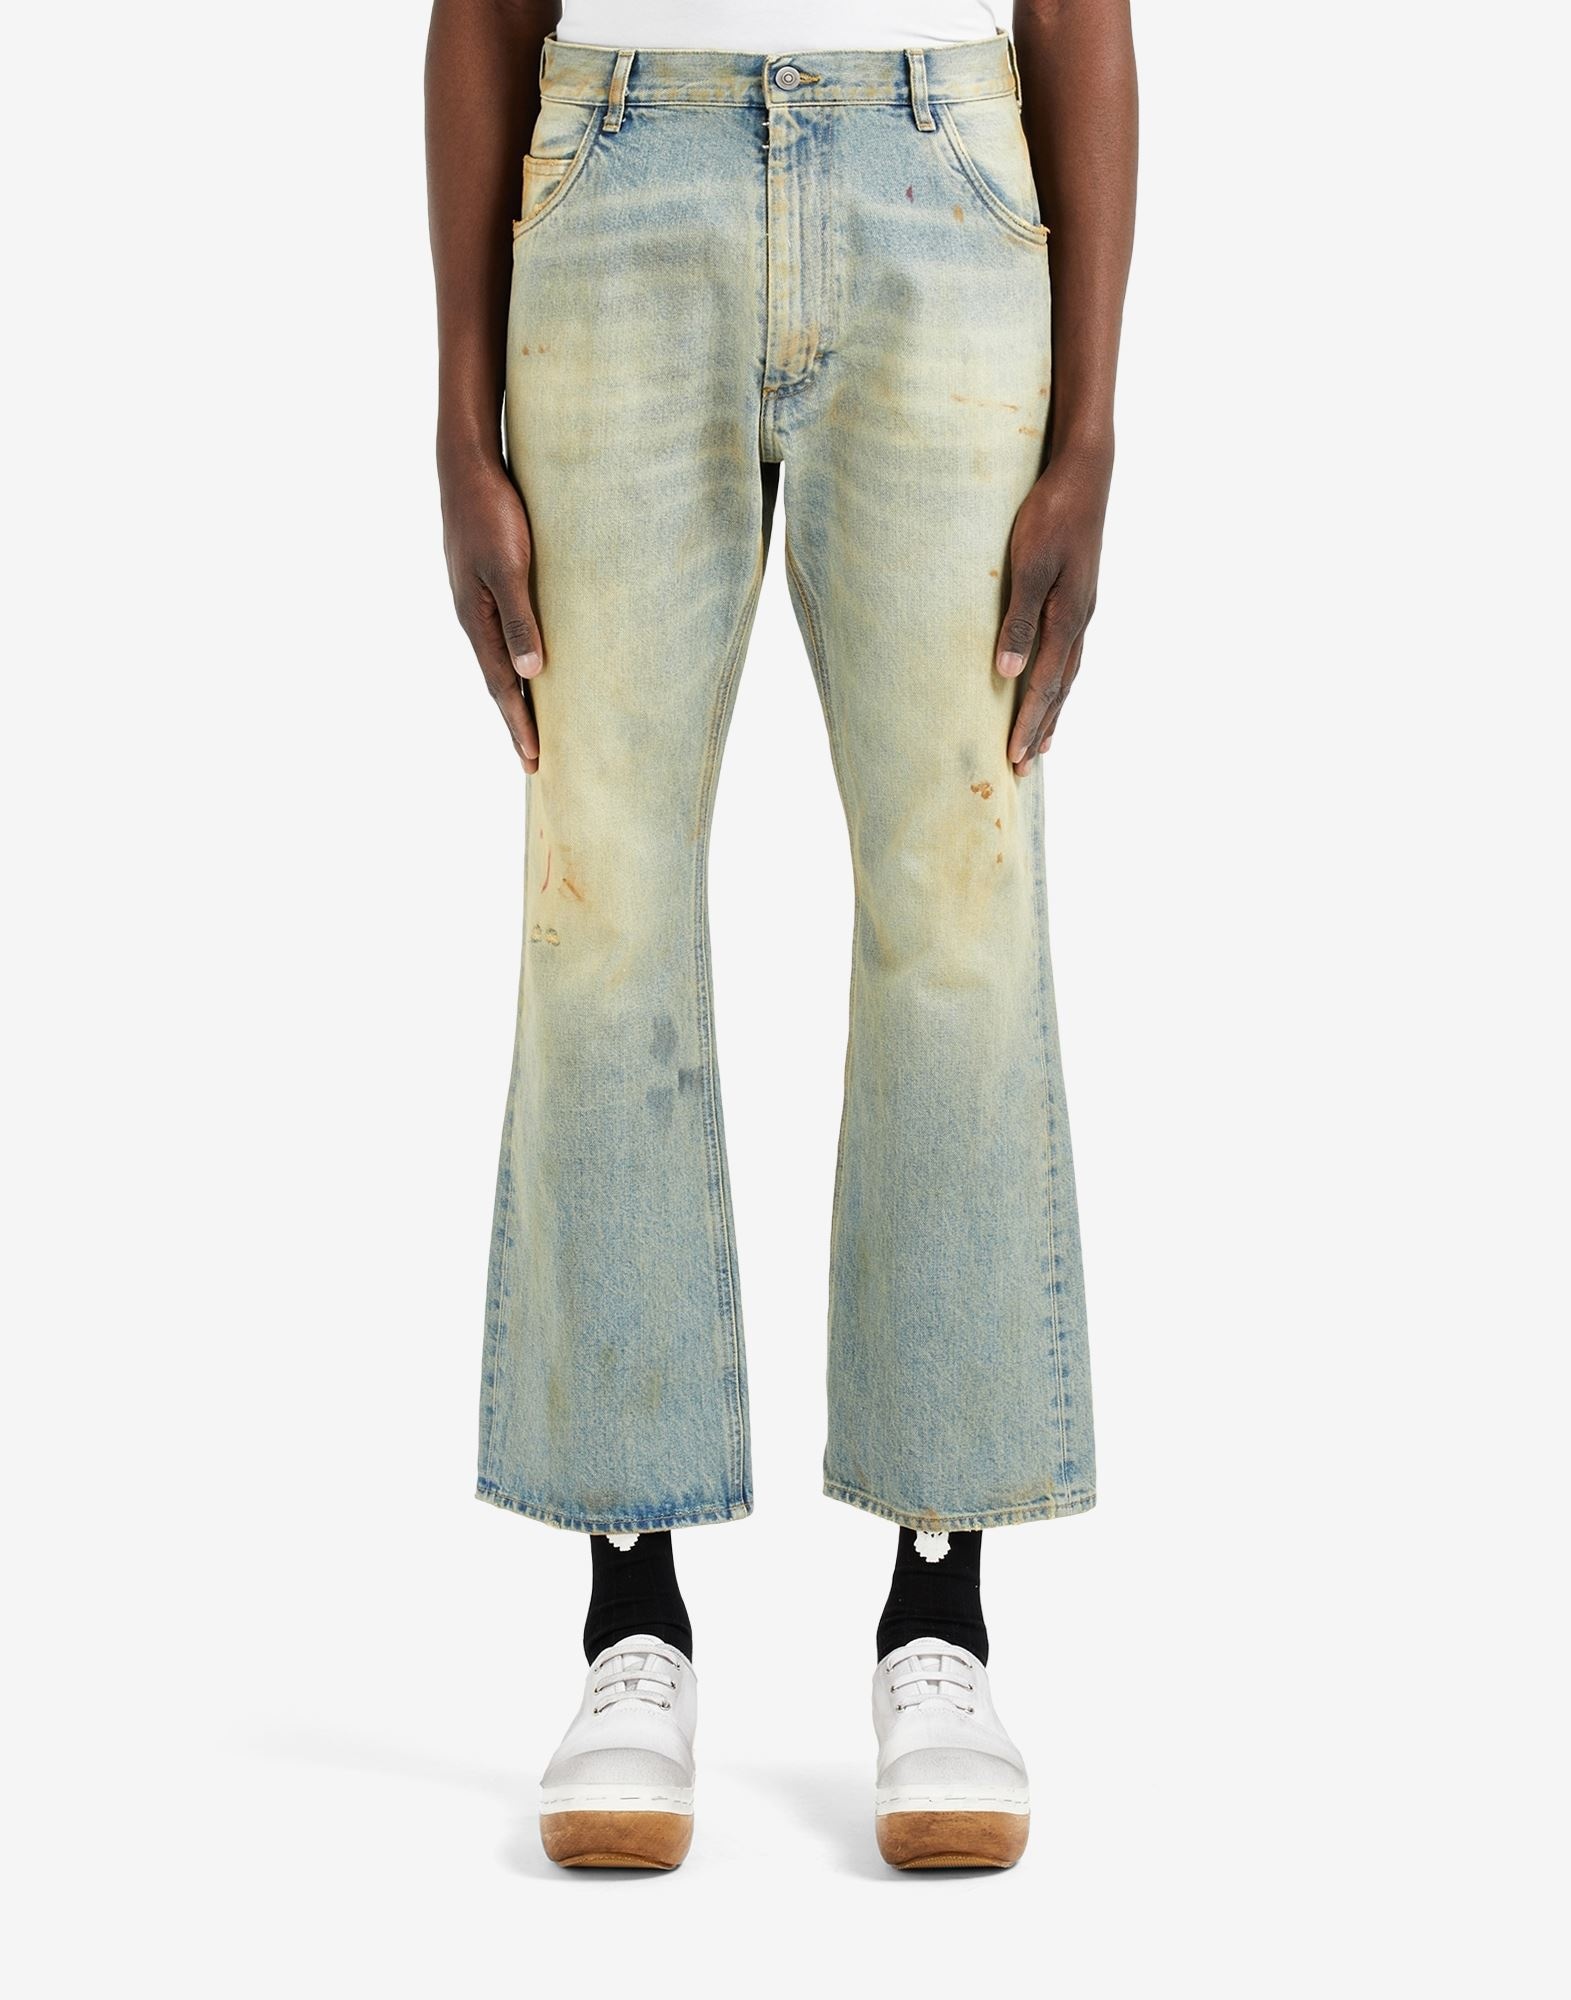 Vintage wash jeans - 5